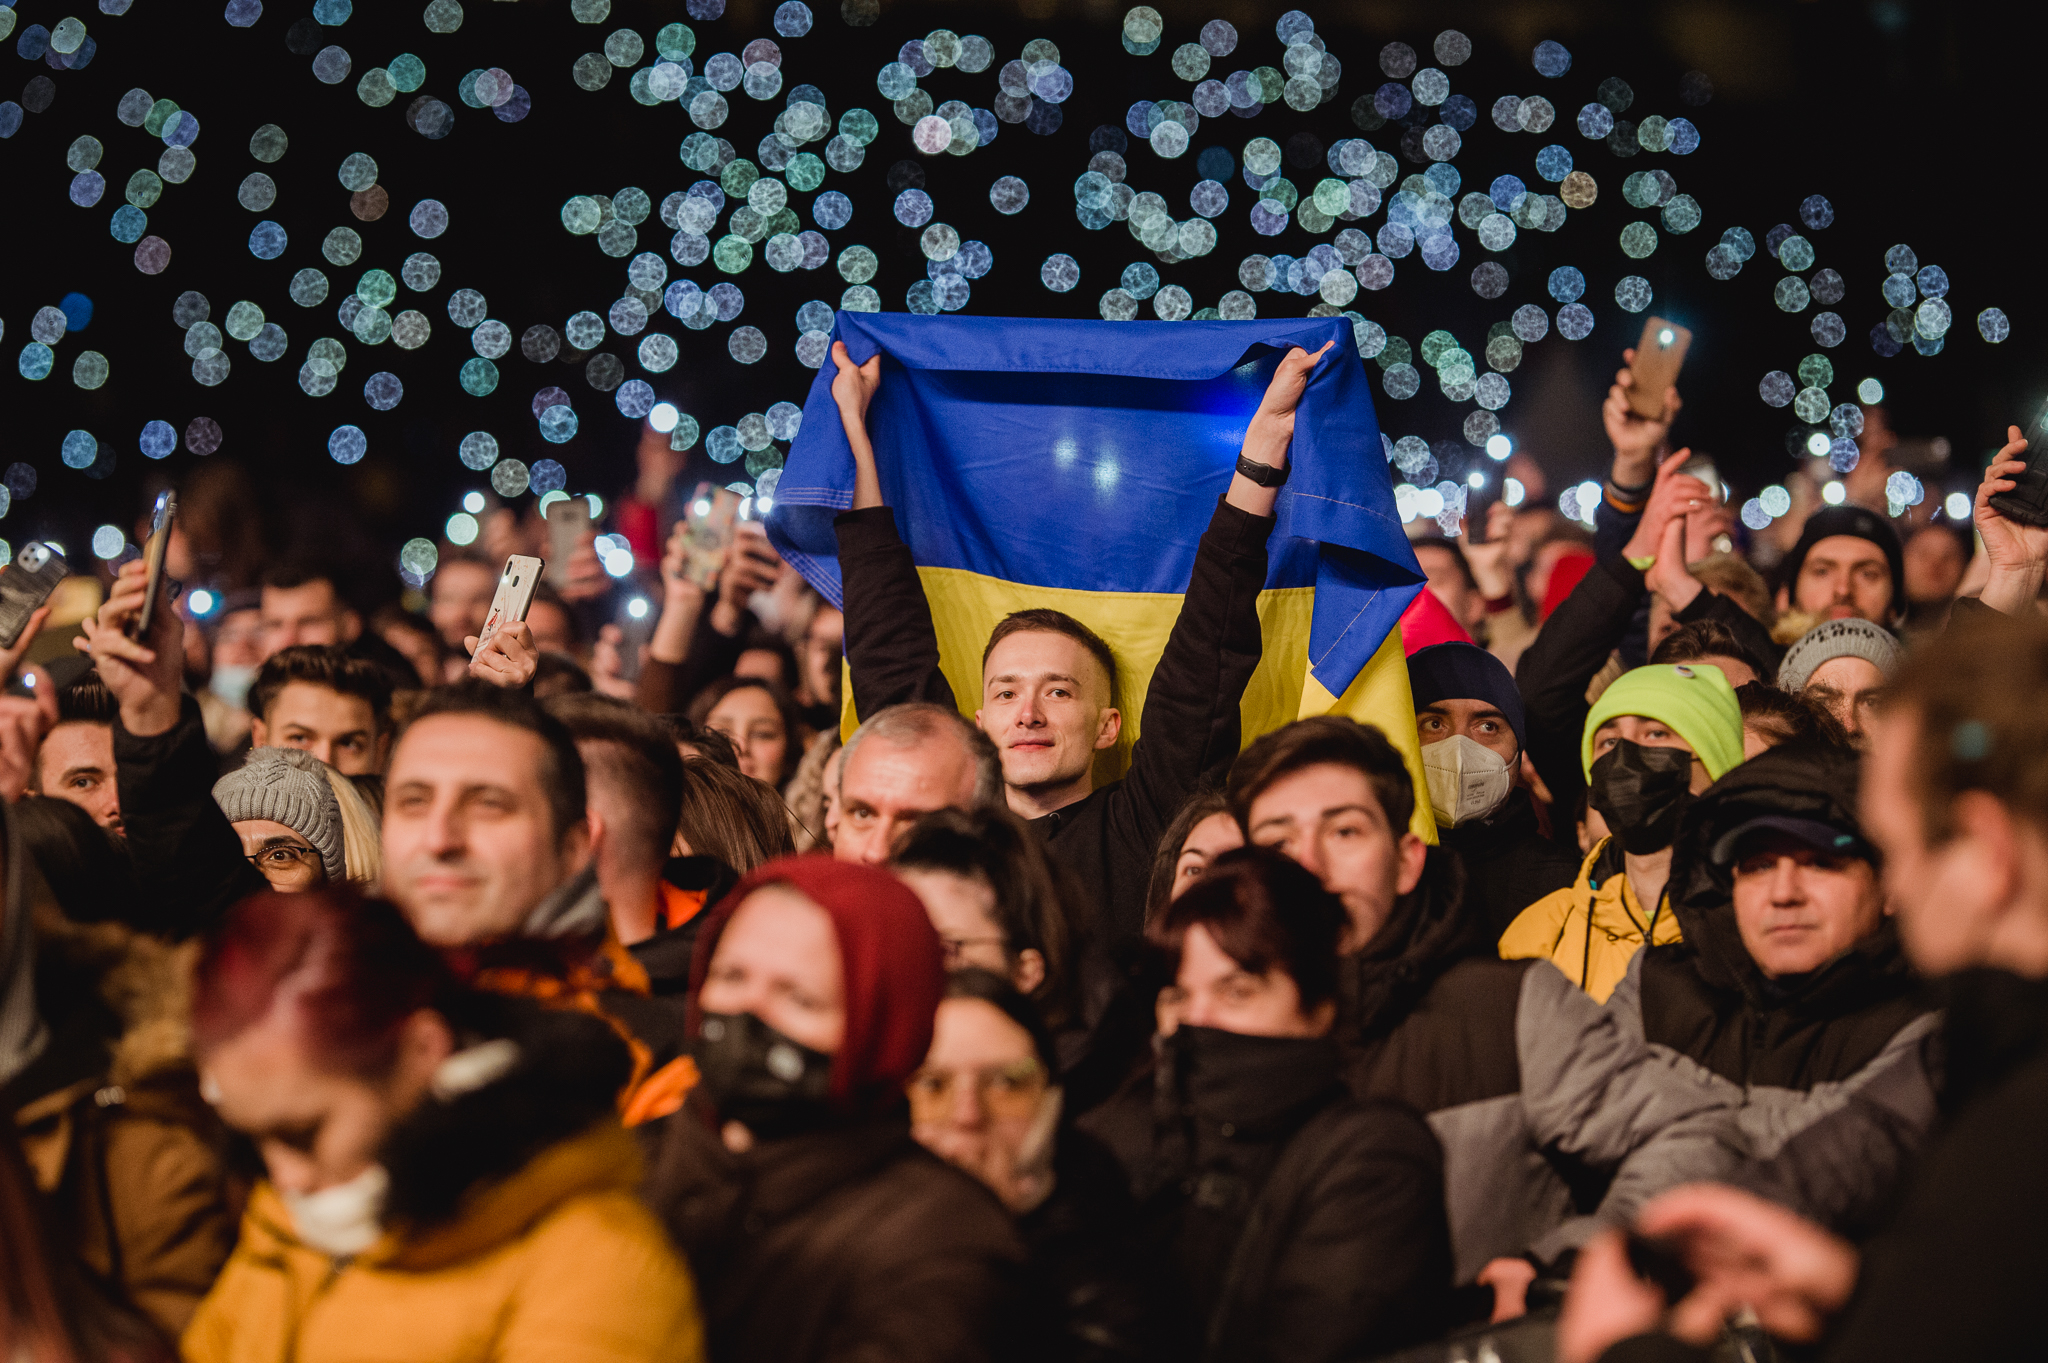 Seară plină de emoții la concertul caritabil WE ARE ONE. 4,5 milioane de lei se vor duce către ucraineni